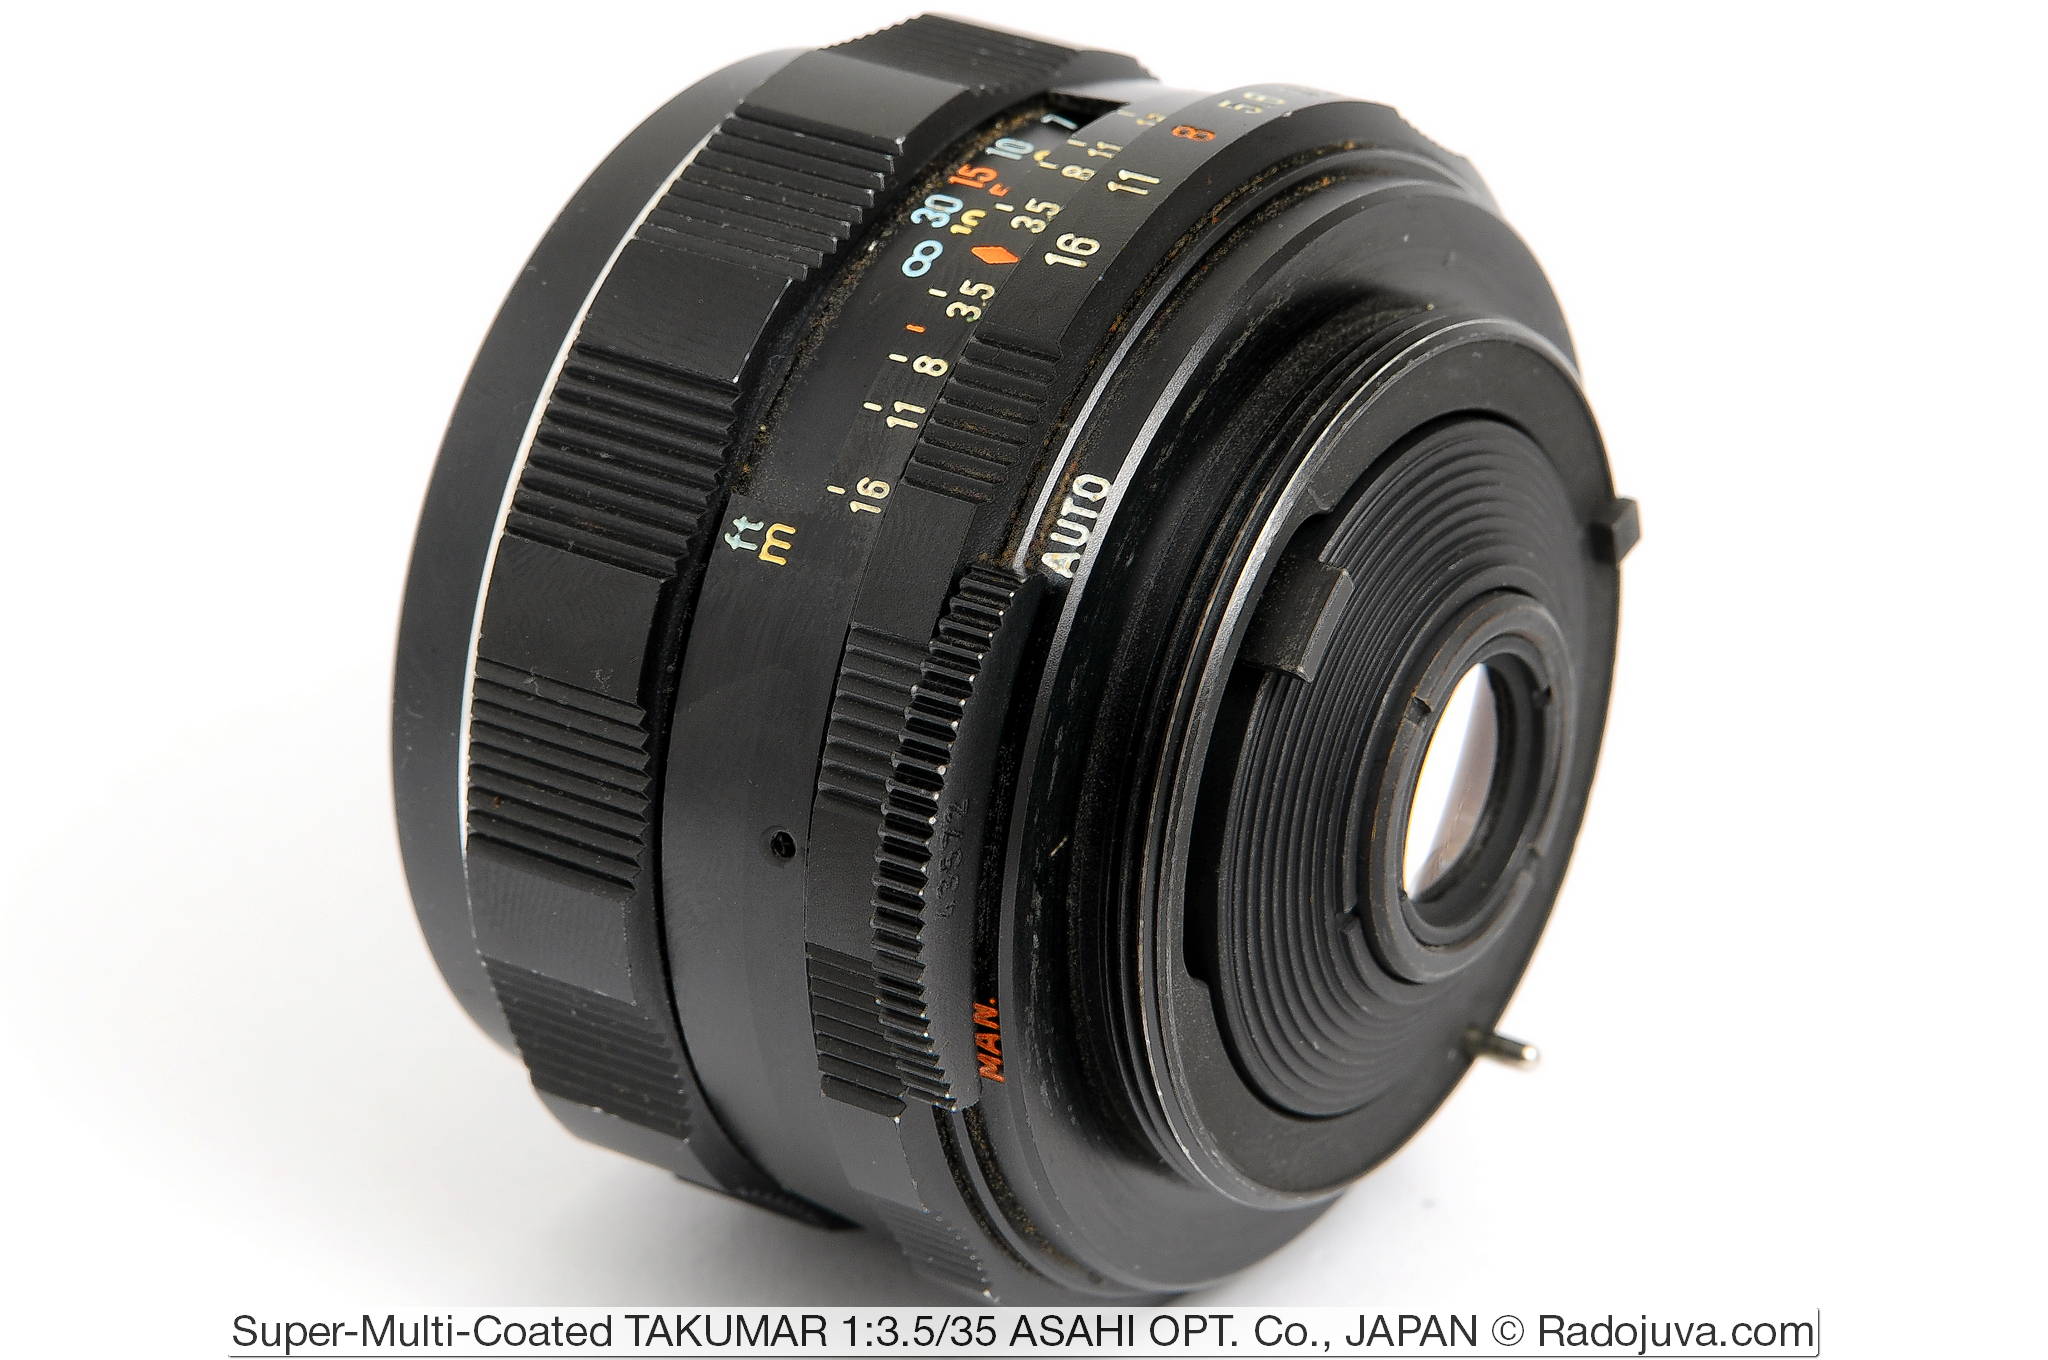 Super-Multi-Coated TAKUMAR 1: 3.5 / 35 ASAHI OPT. Co., JAPAN